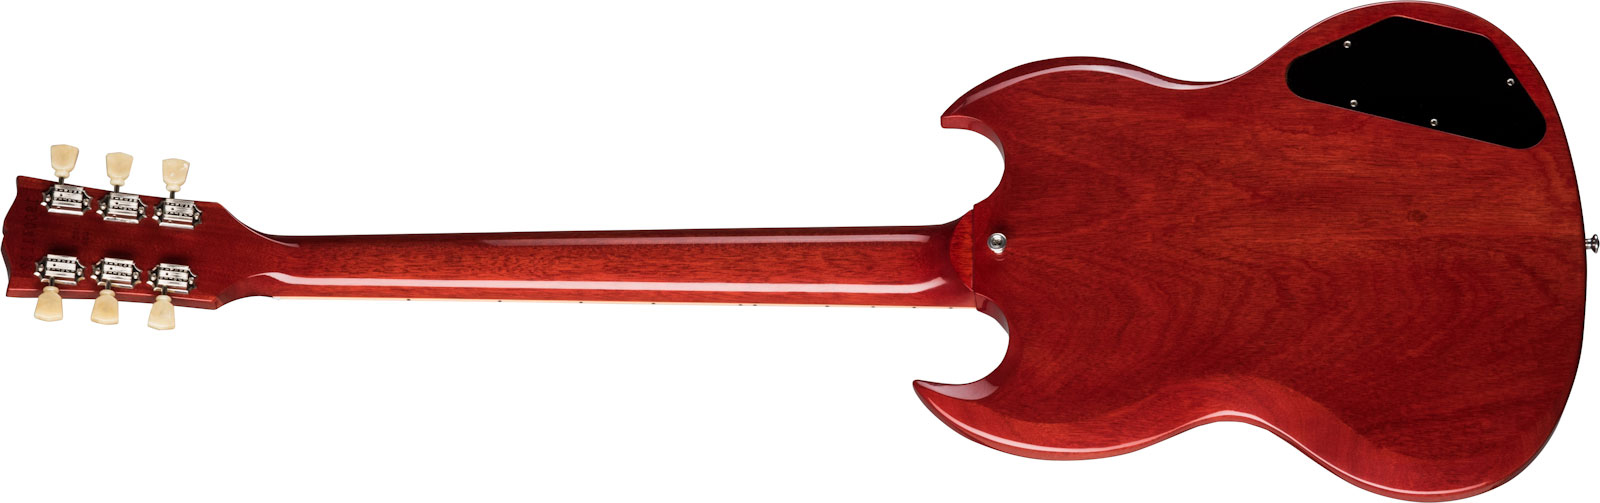 Gibson Sg Standard '61 Lh Gaucher 2h Ht Rw - Vintage Cherry - Linkshandige elektrische gitaar - Variation 1